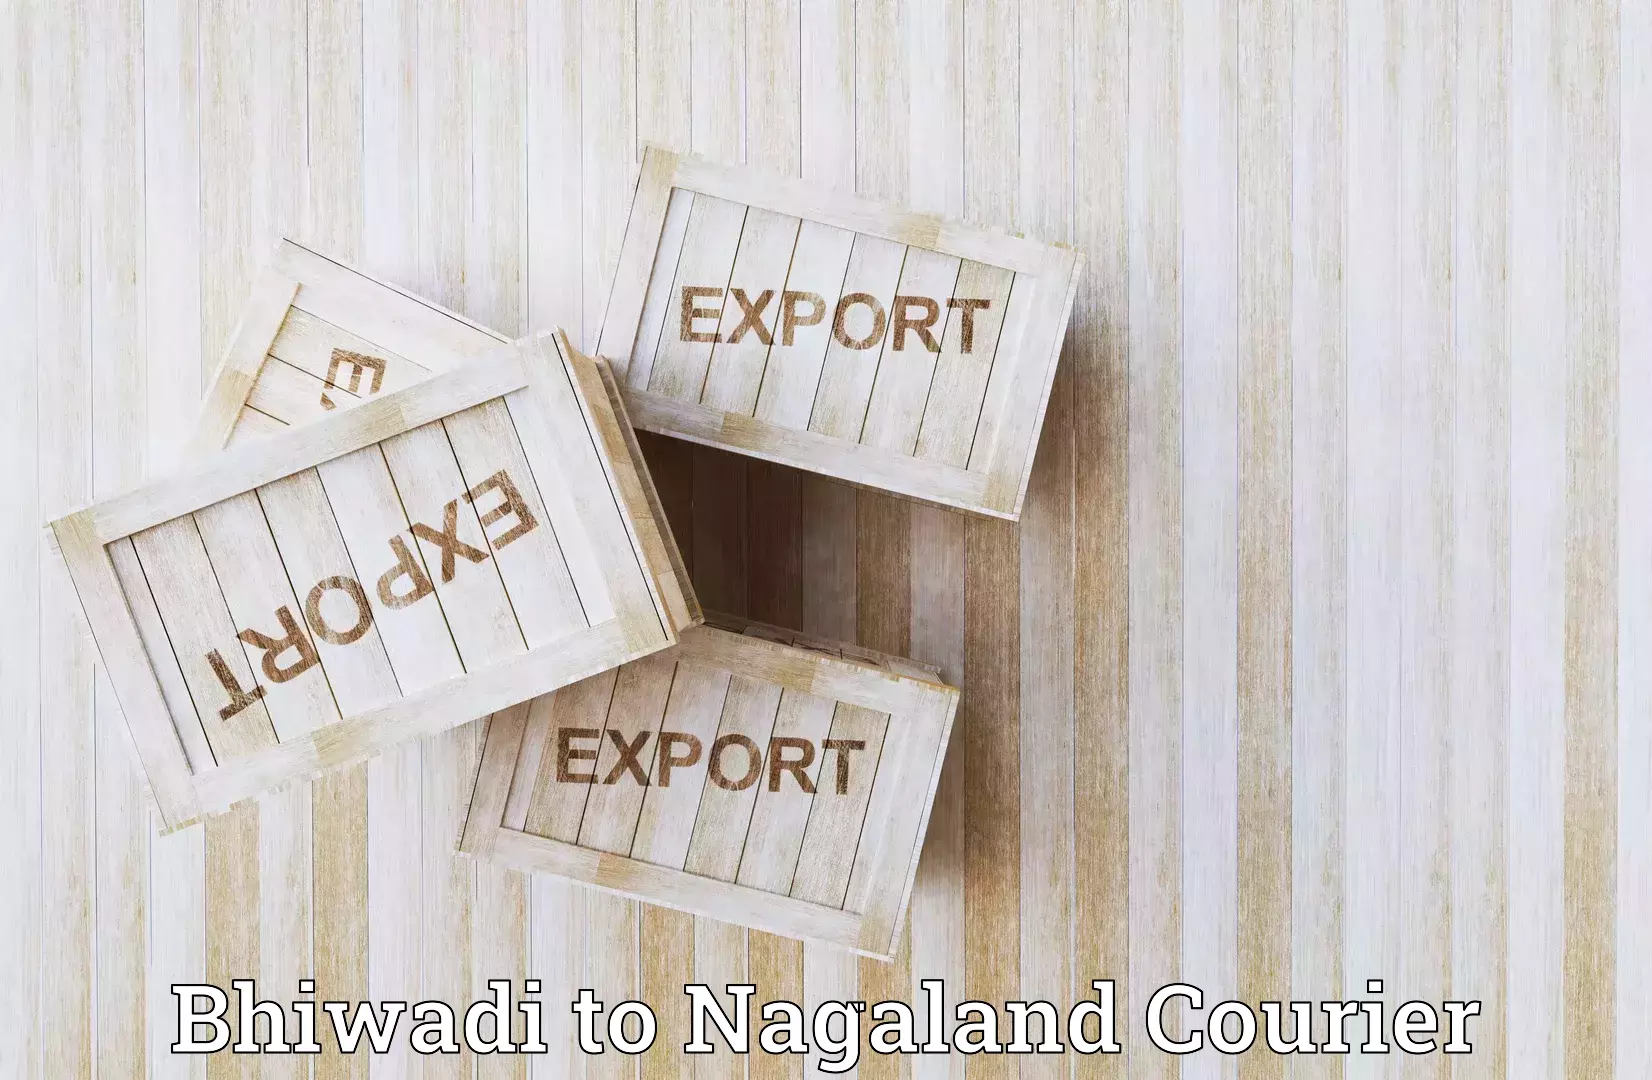 Customer-centric shipping Bhiwadi to Nagaland